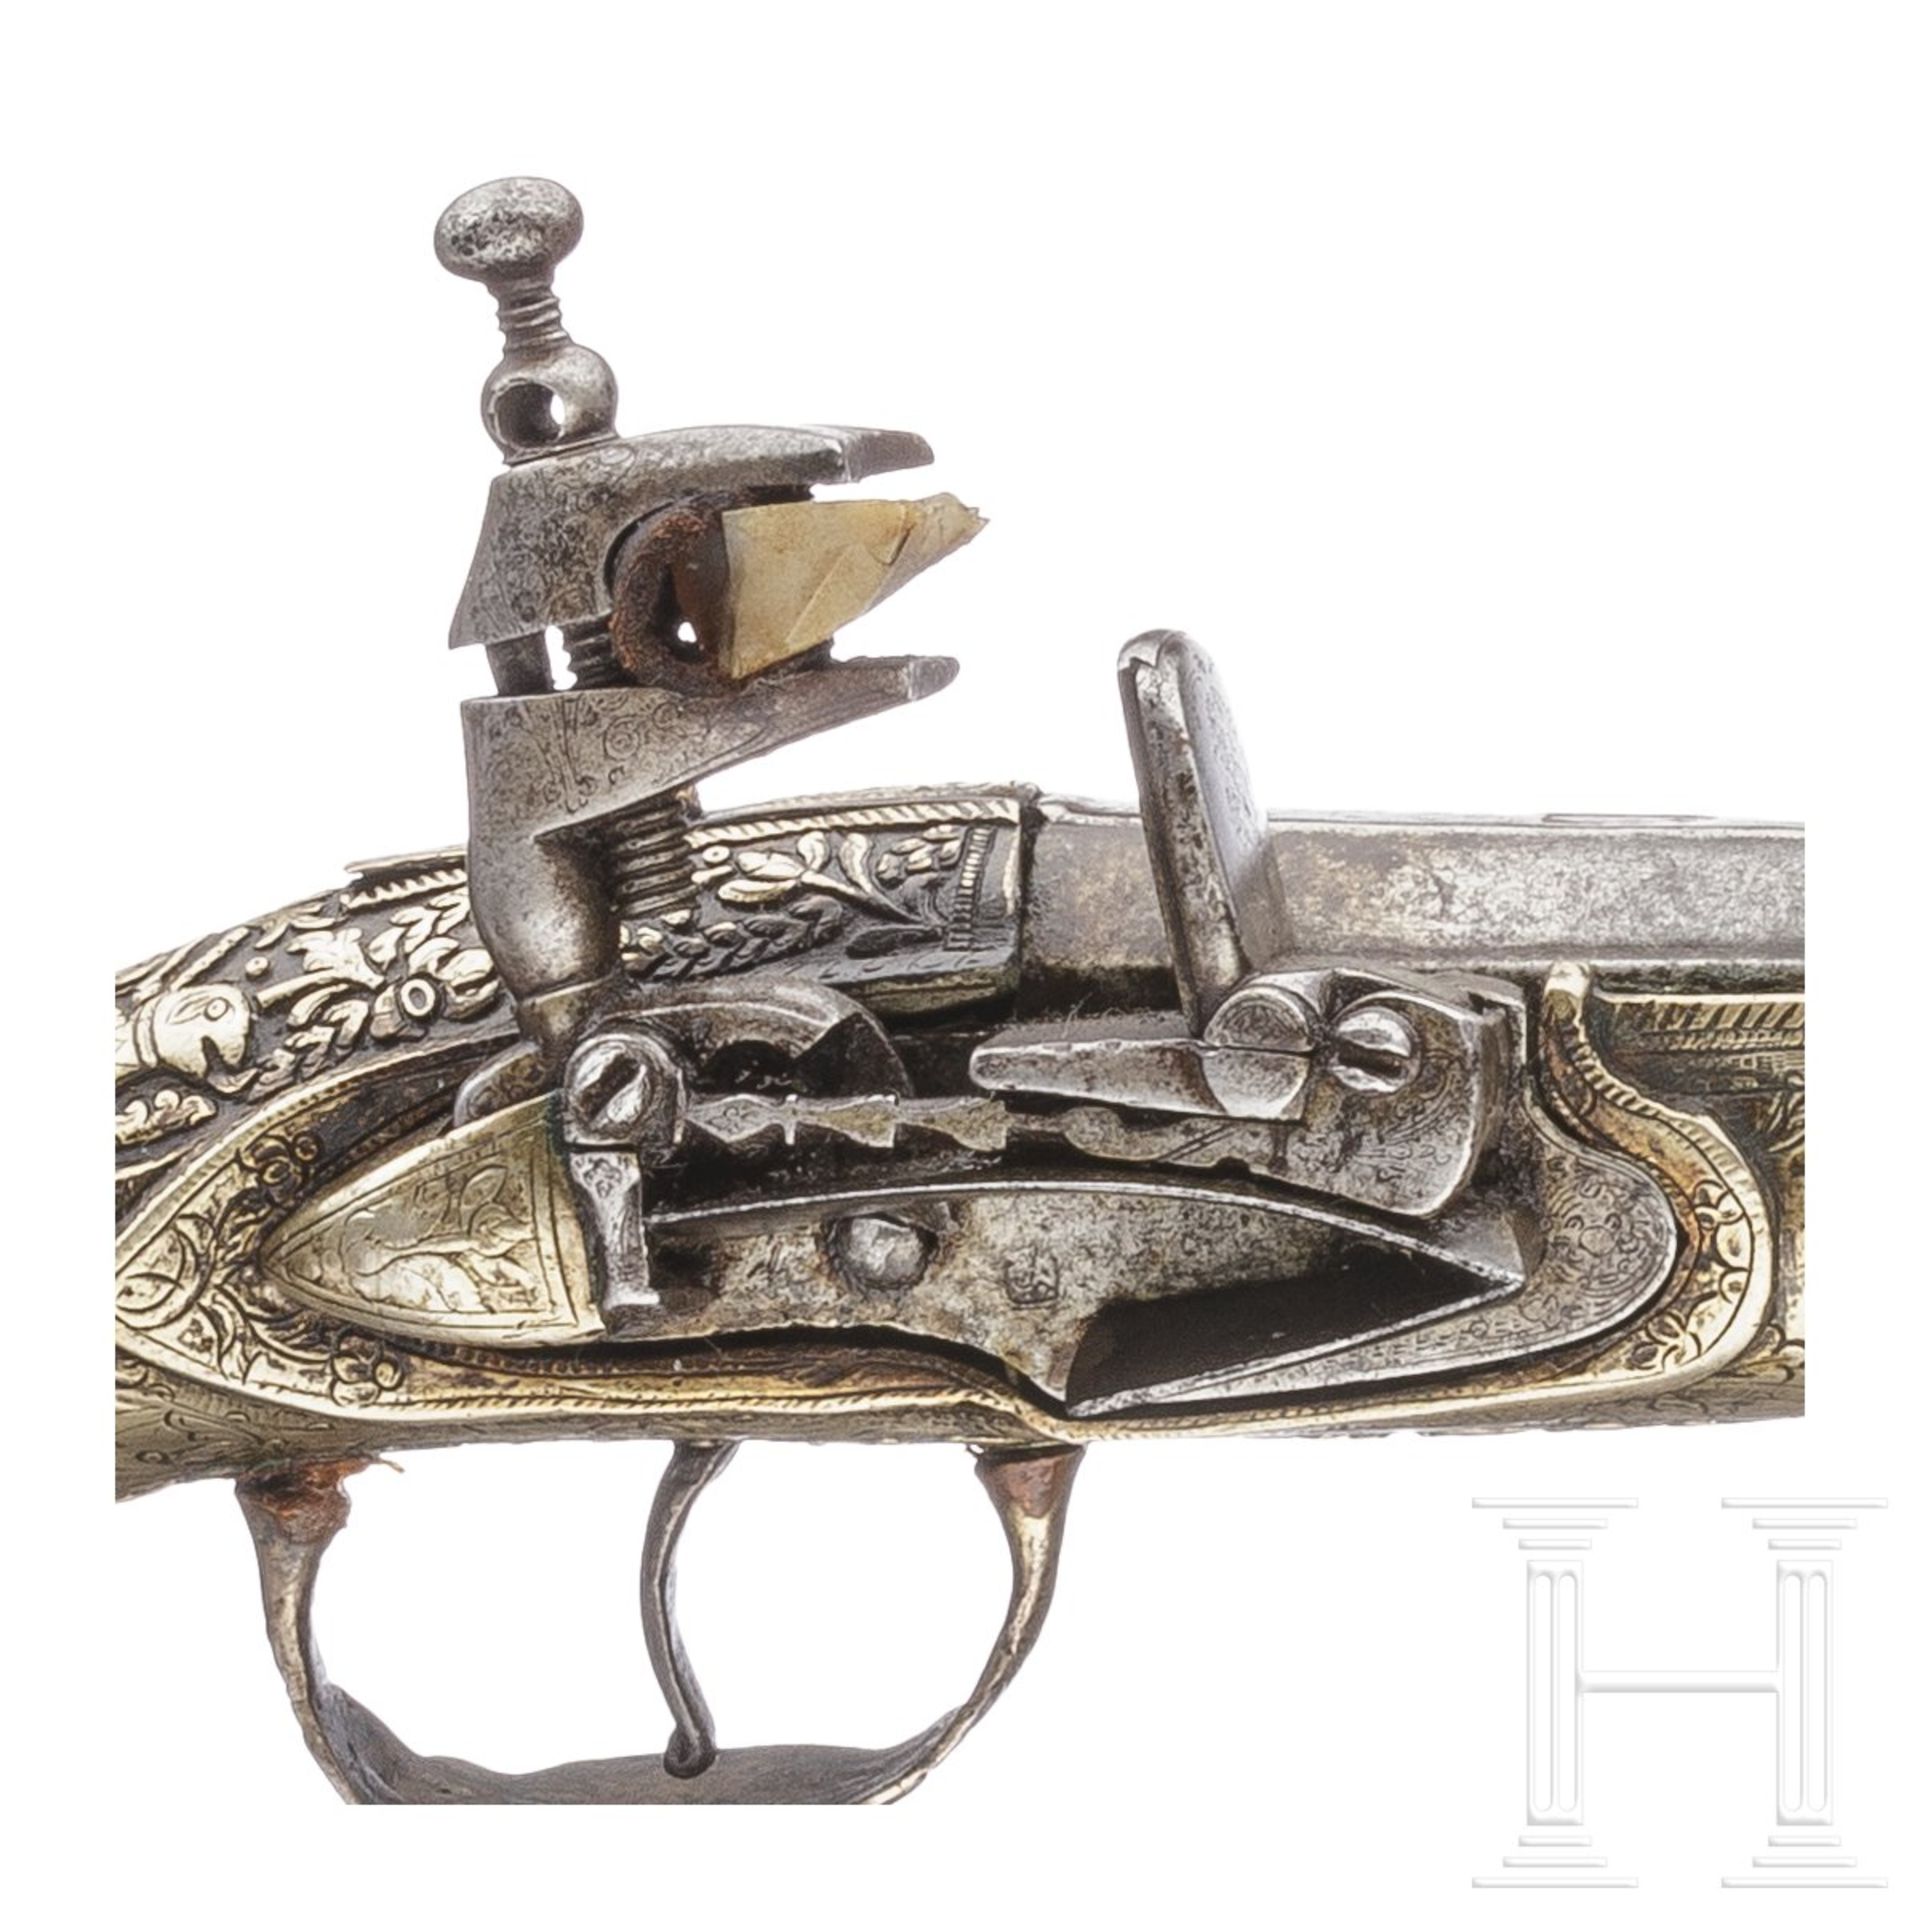 Silbergeschäftete Miquelet-Pistole, balkantürkisch/Albanien, um 1850 - Bild 4 aus 4